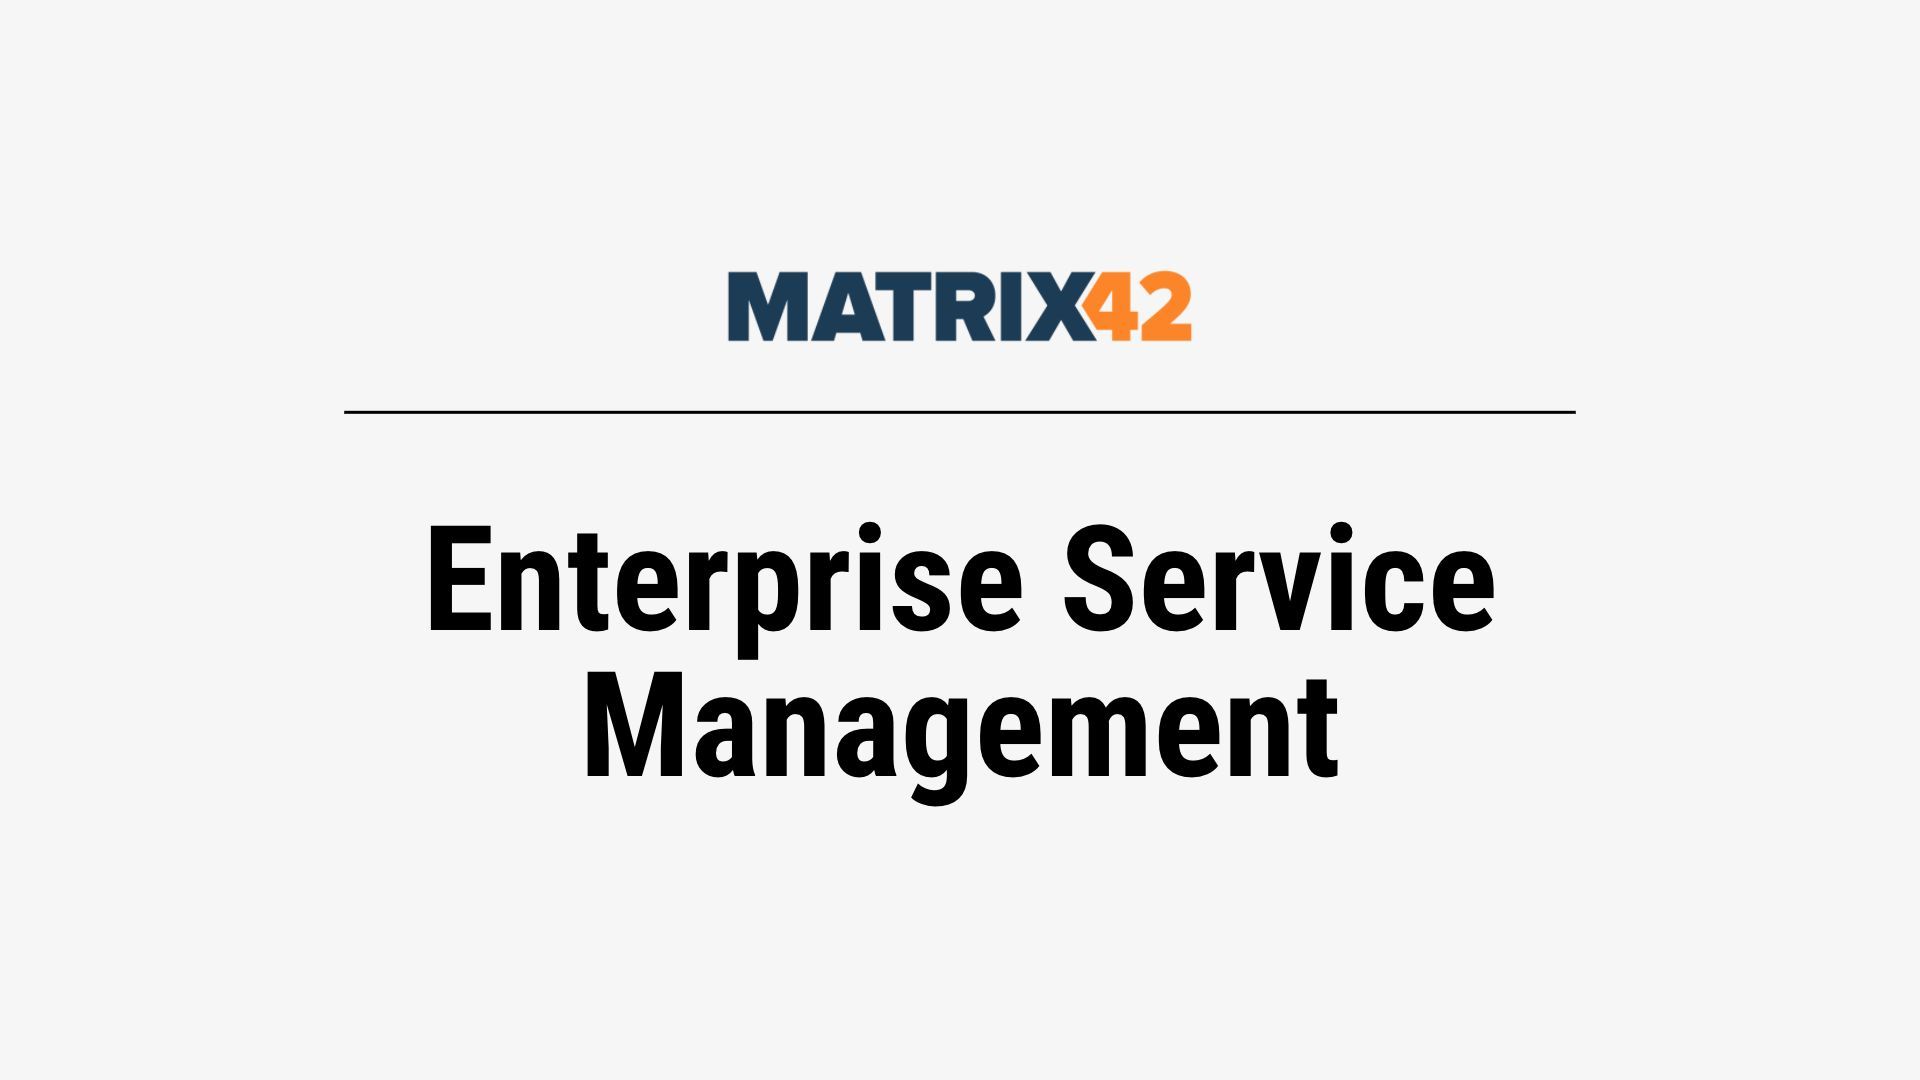 Matrix42 Enterprise Service Management Training